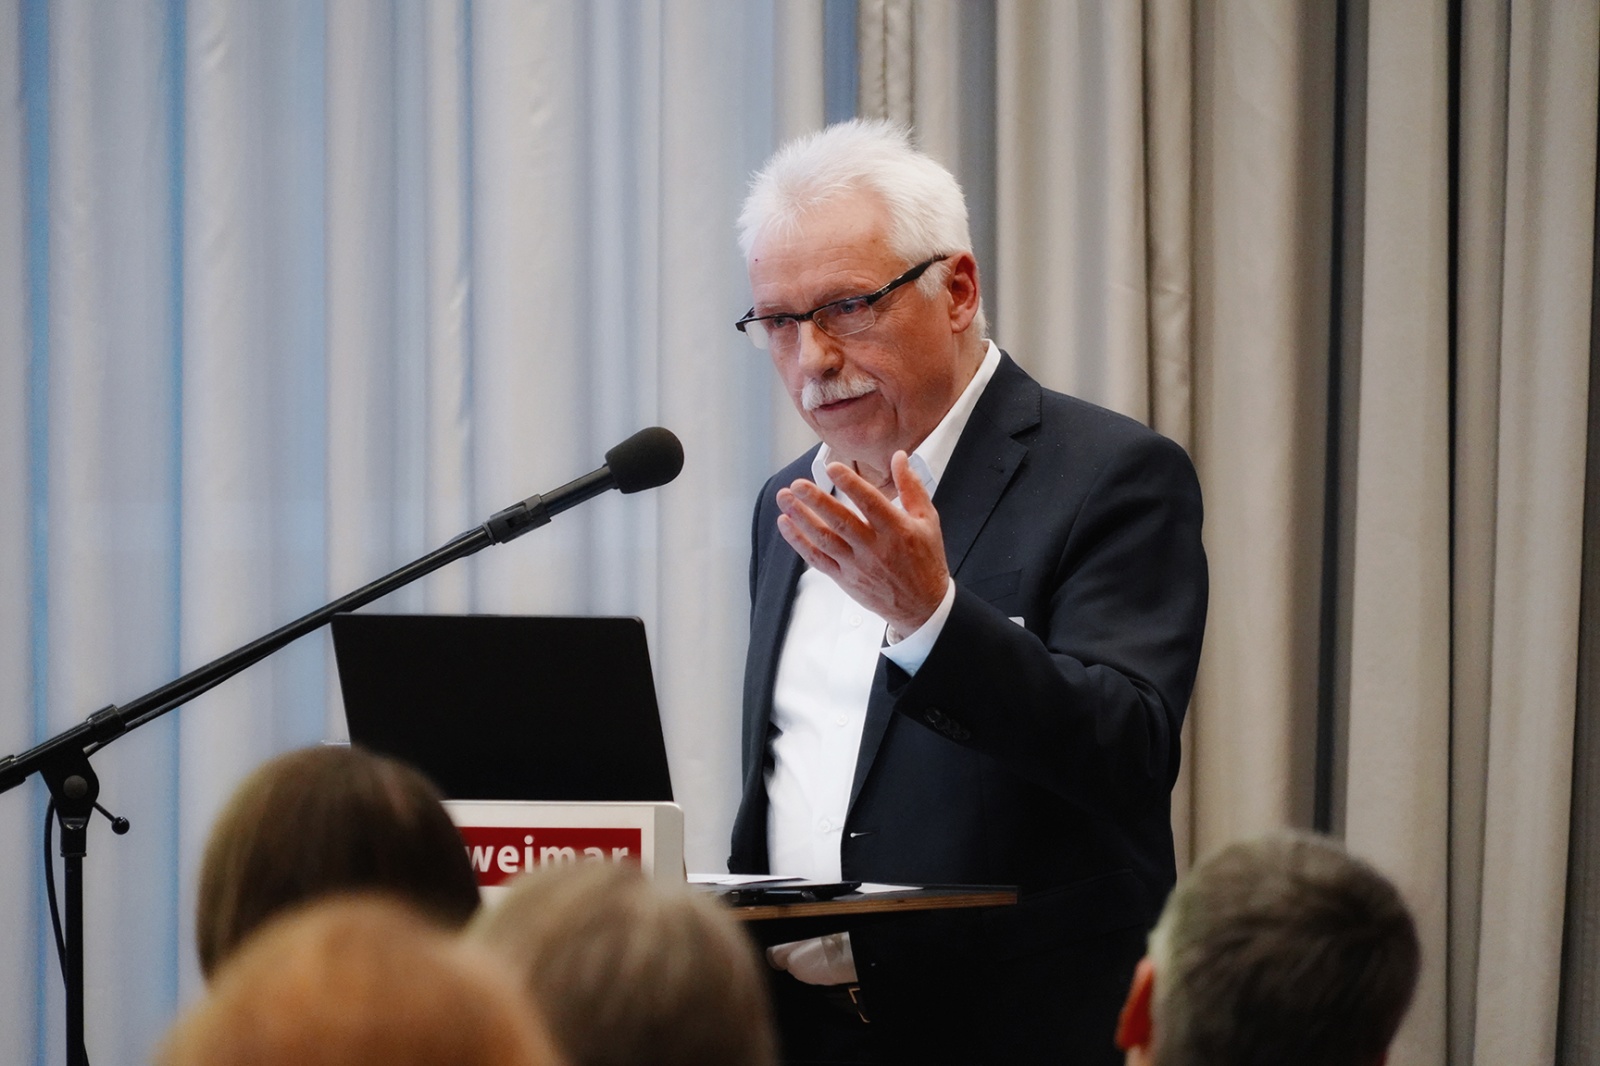 Wohnbaukonferenz »Neues Wohnen denken« | SESSION 3: Prof. Dr. Gerd Zimmermann, Bild: Katja Gehlfuß